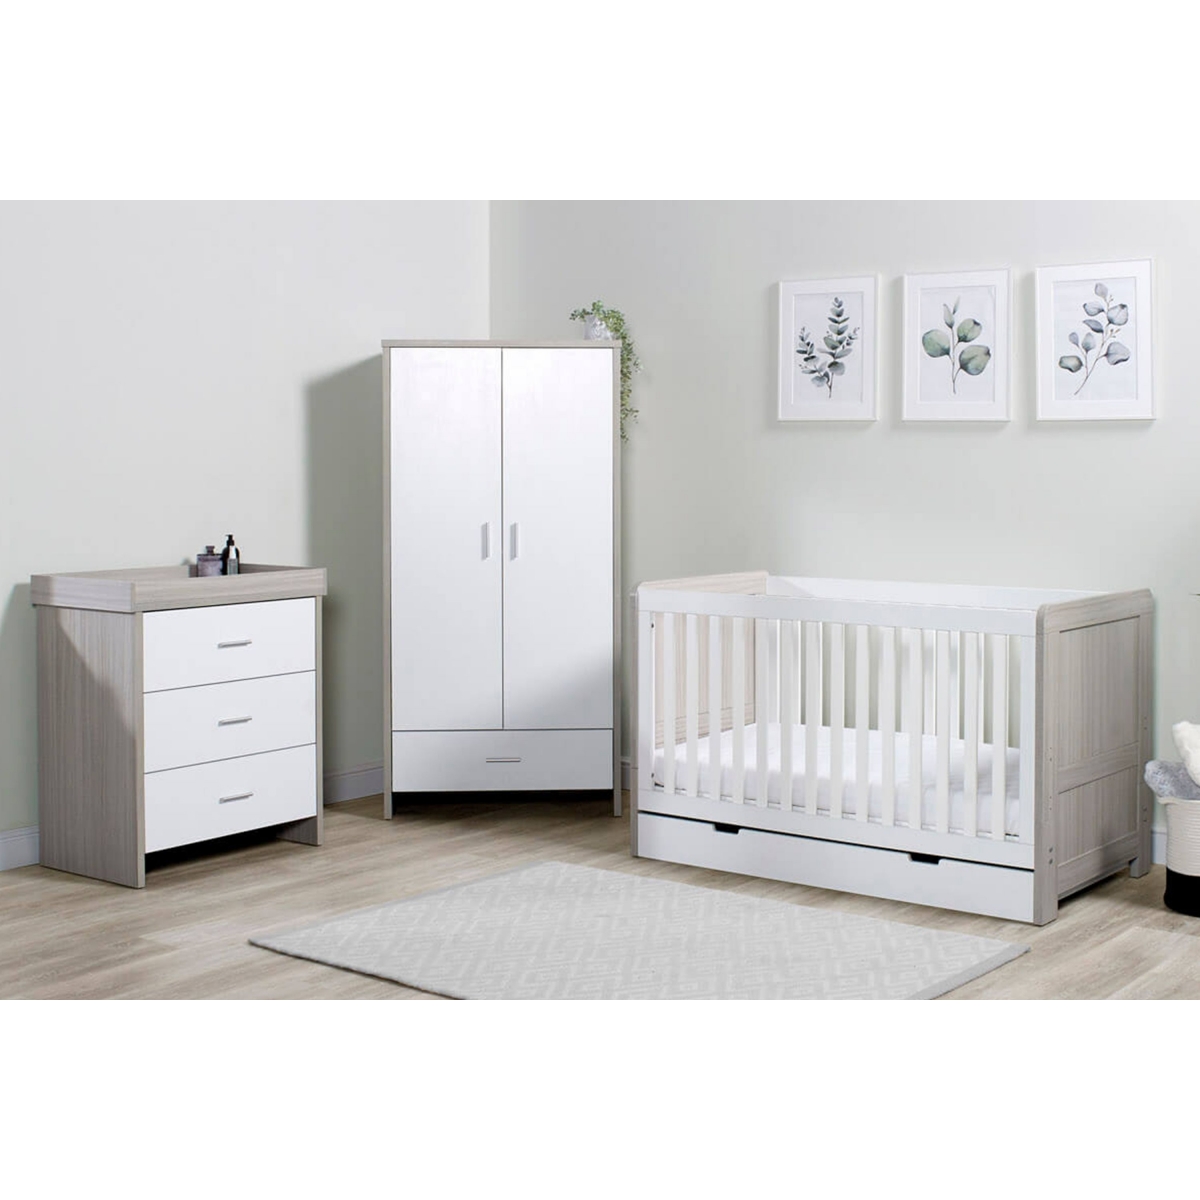 https://www.kiddies-kingdom.com/173197-thickbox_default/ickle-bubba-pembrey-3-piece-furniture-set-with-under-drawer-ash-grey-white.jpg